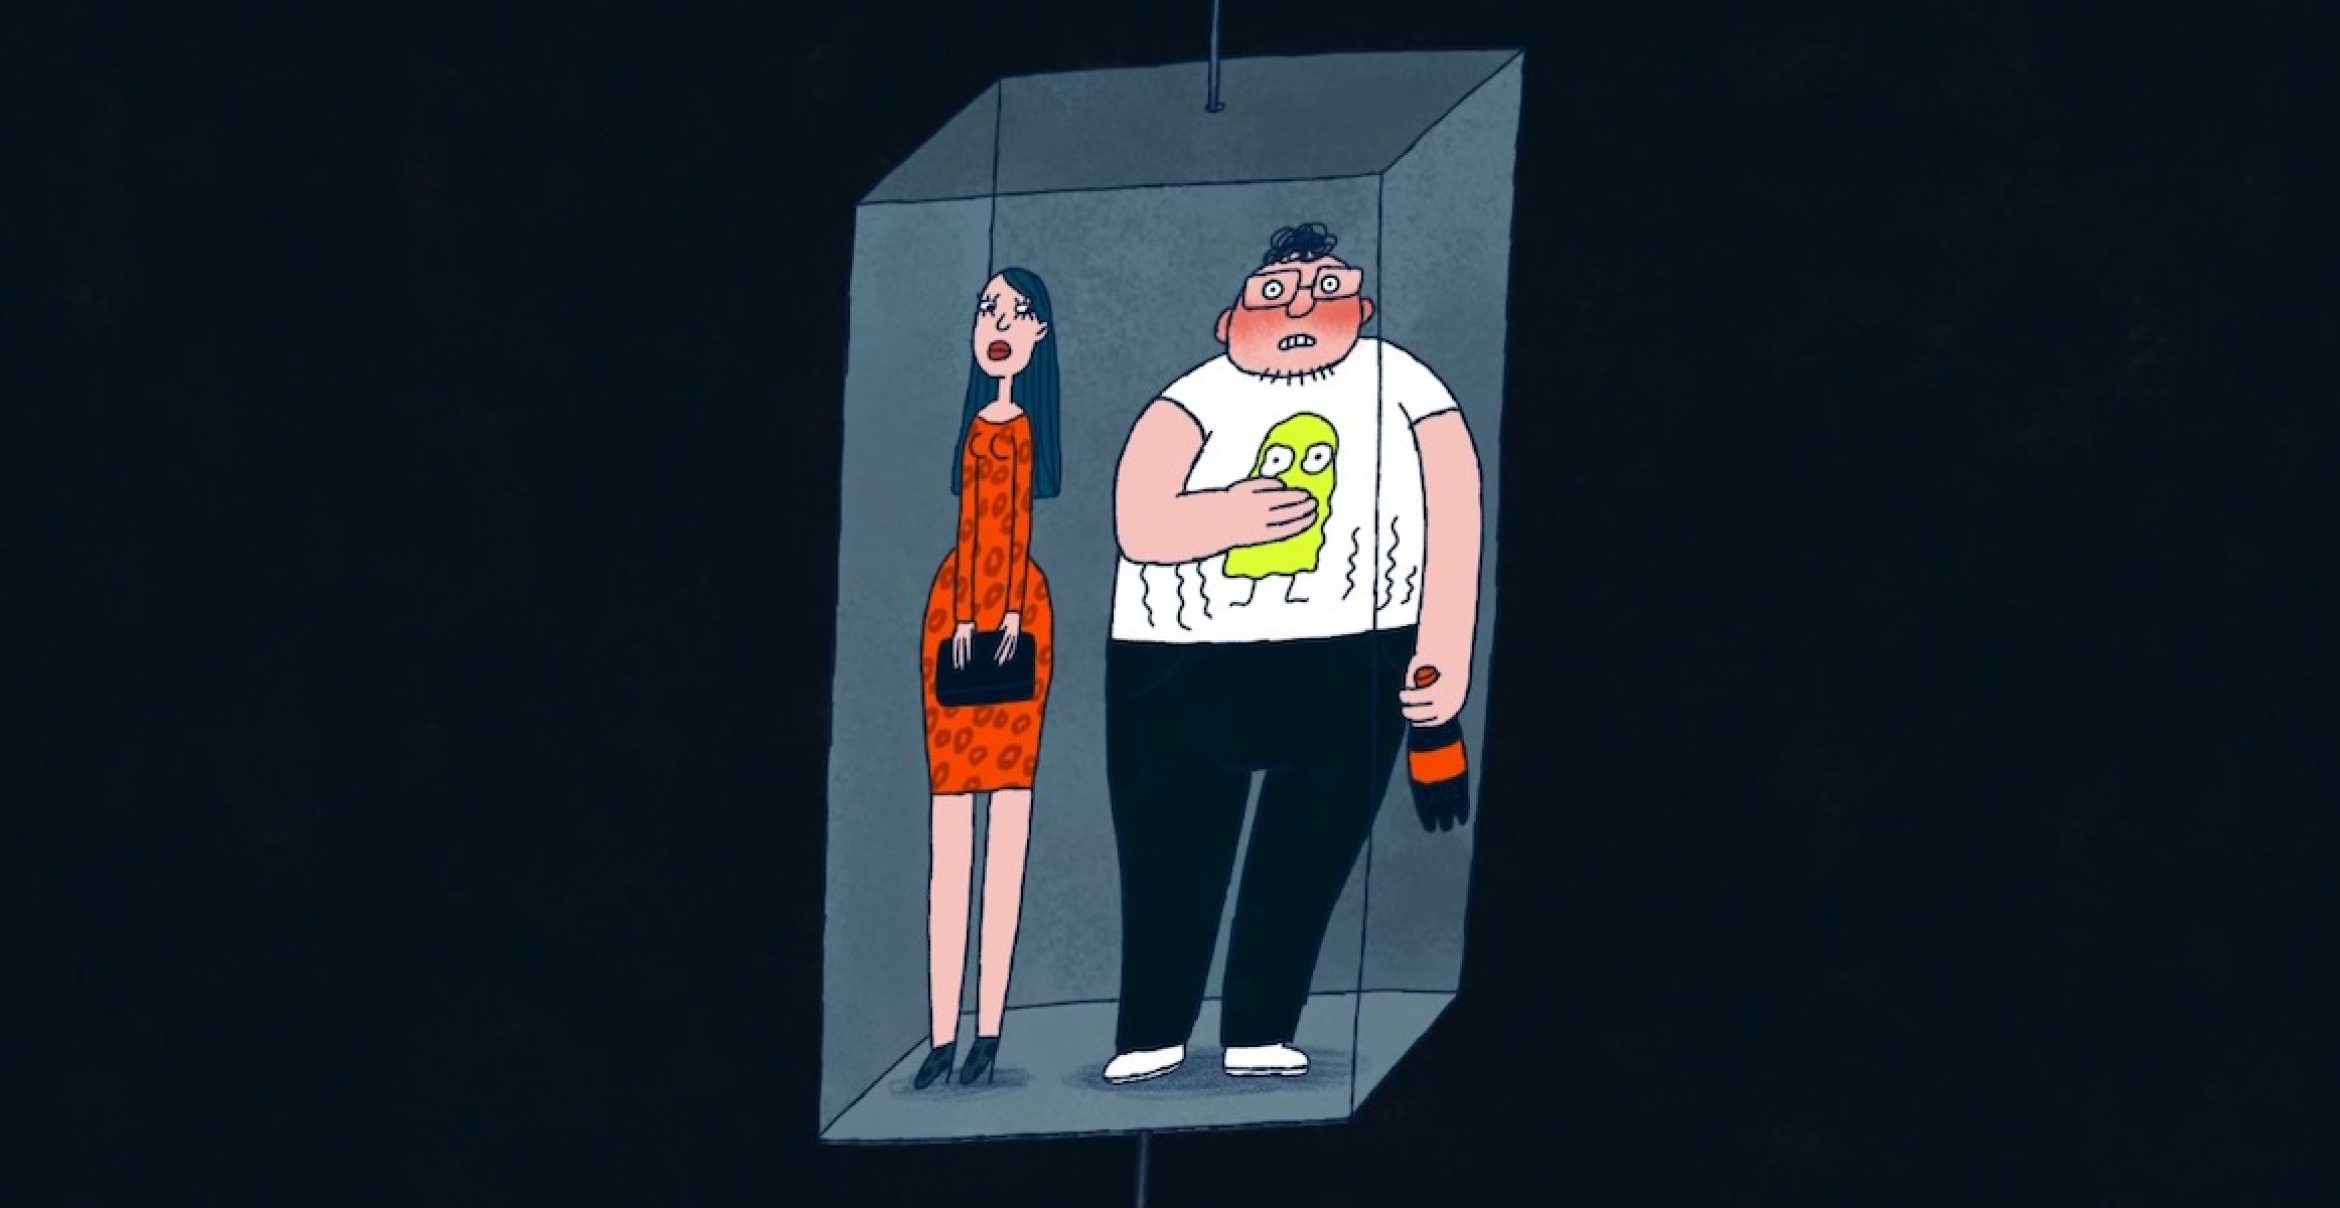 Der animierte Kurzfilm „Awkward“ zeigt, wie peinlich und unangenehm der Alltag sein kann